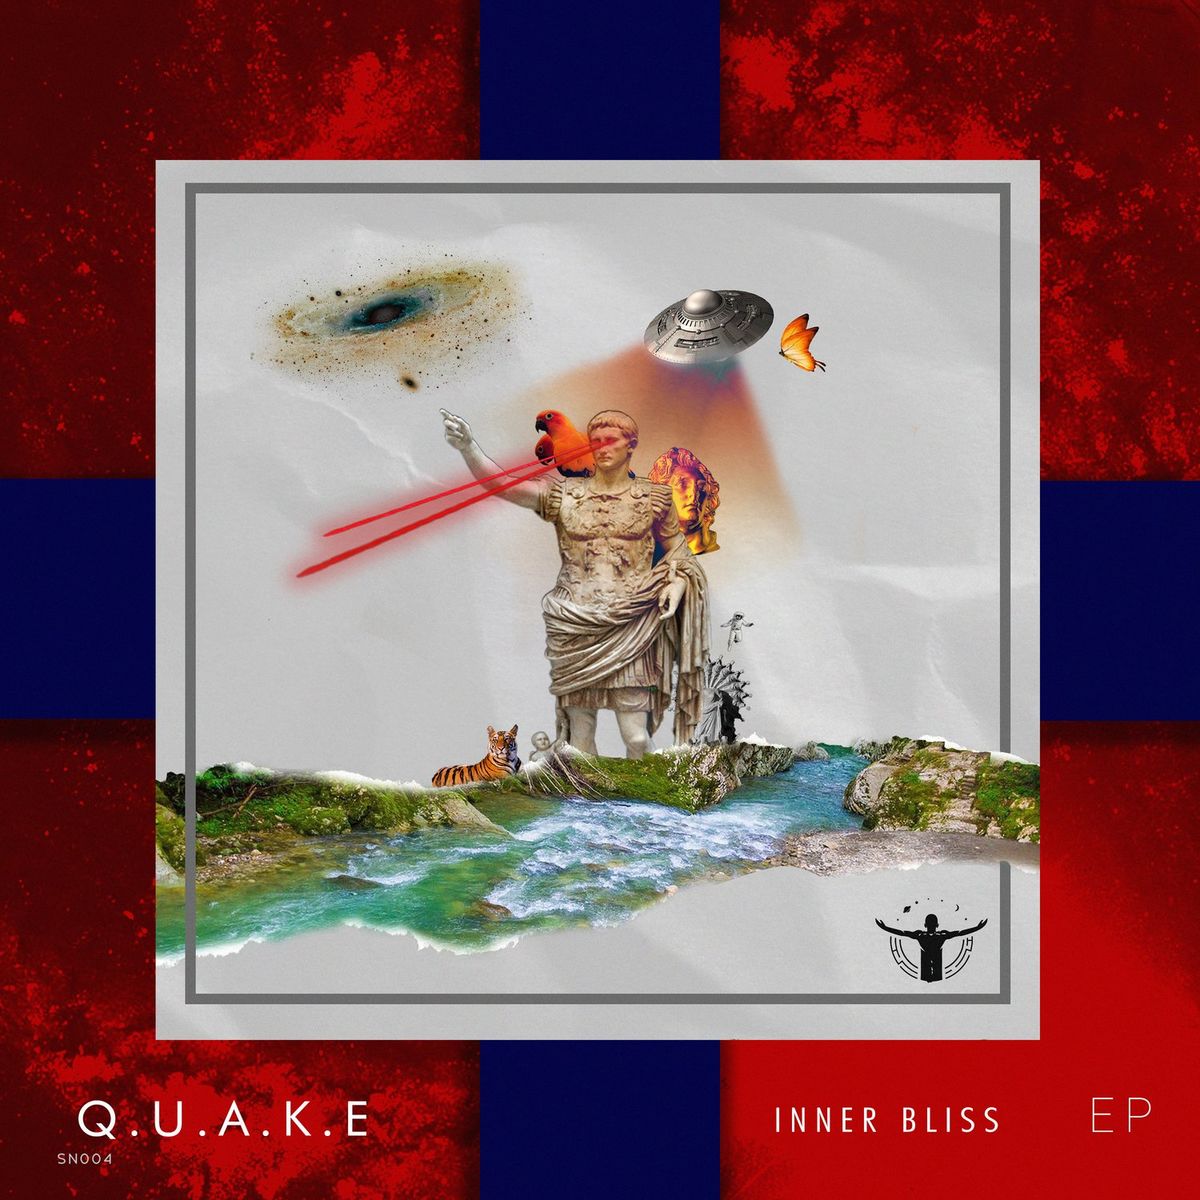 Q.U.A.K.E - Inner Bliss EP [SN004]